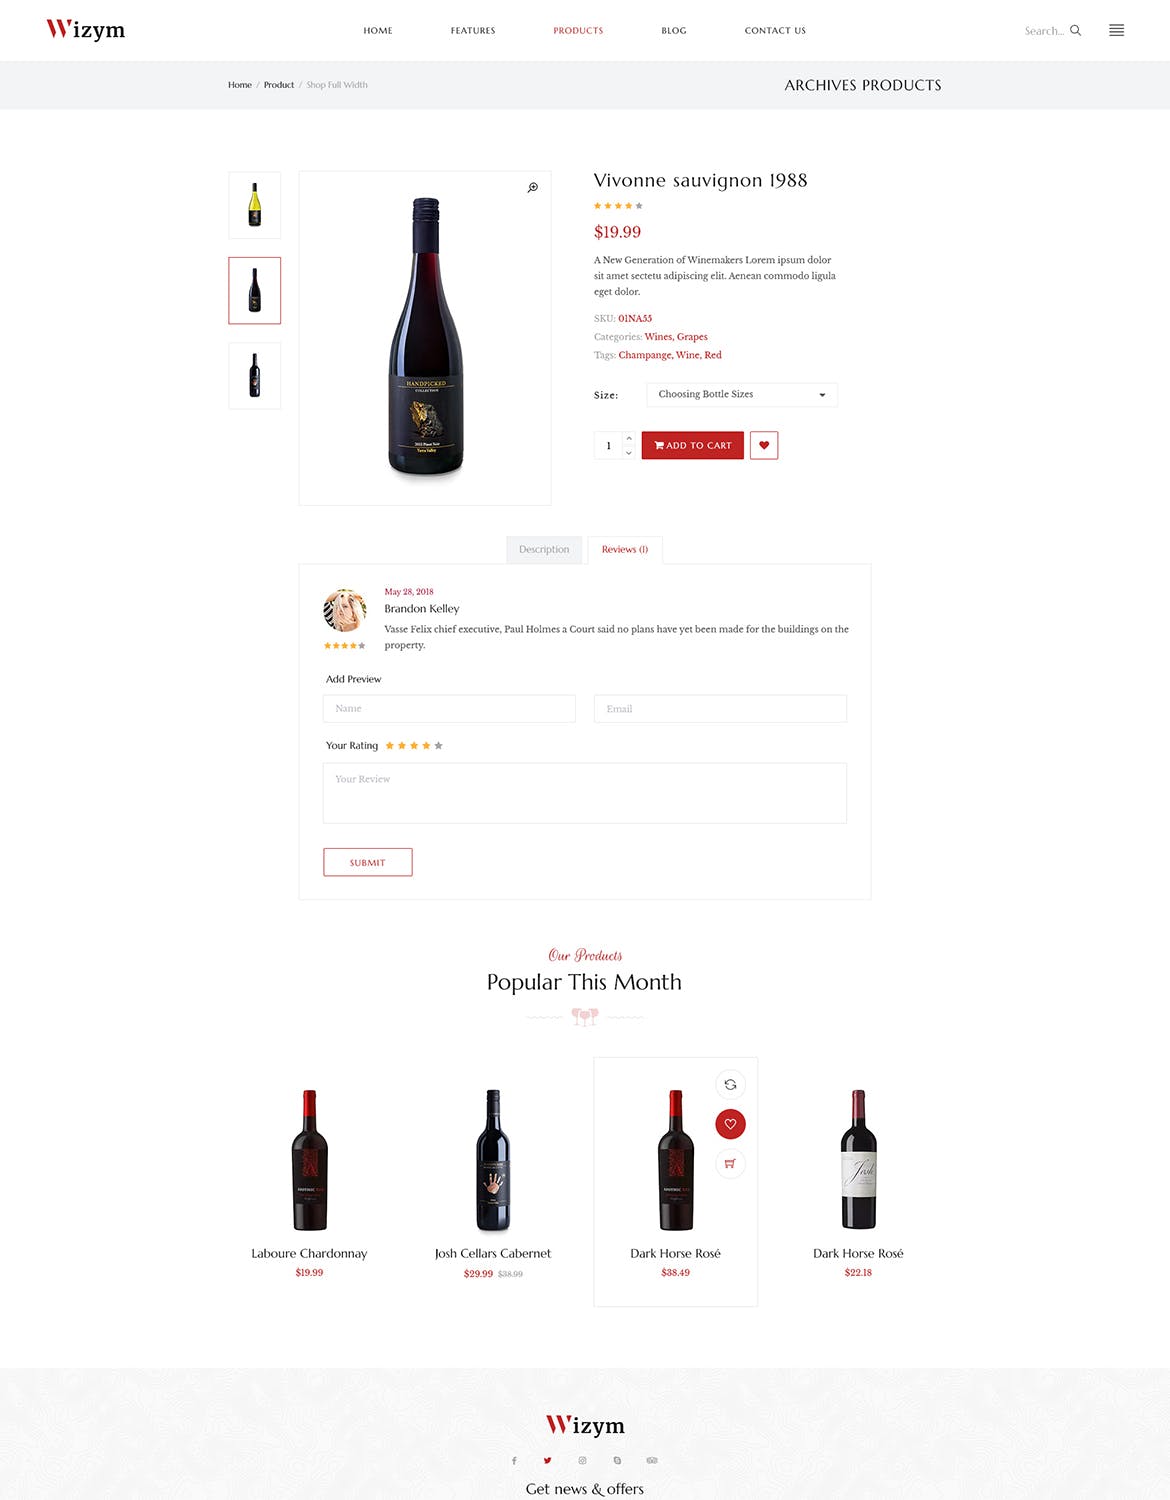 葡萄酒品牌网站设计PSD模板 Wizym | Wine & Winery PSD Template插图(8)